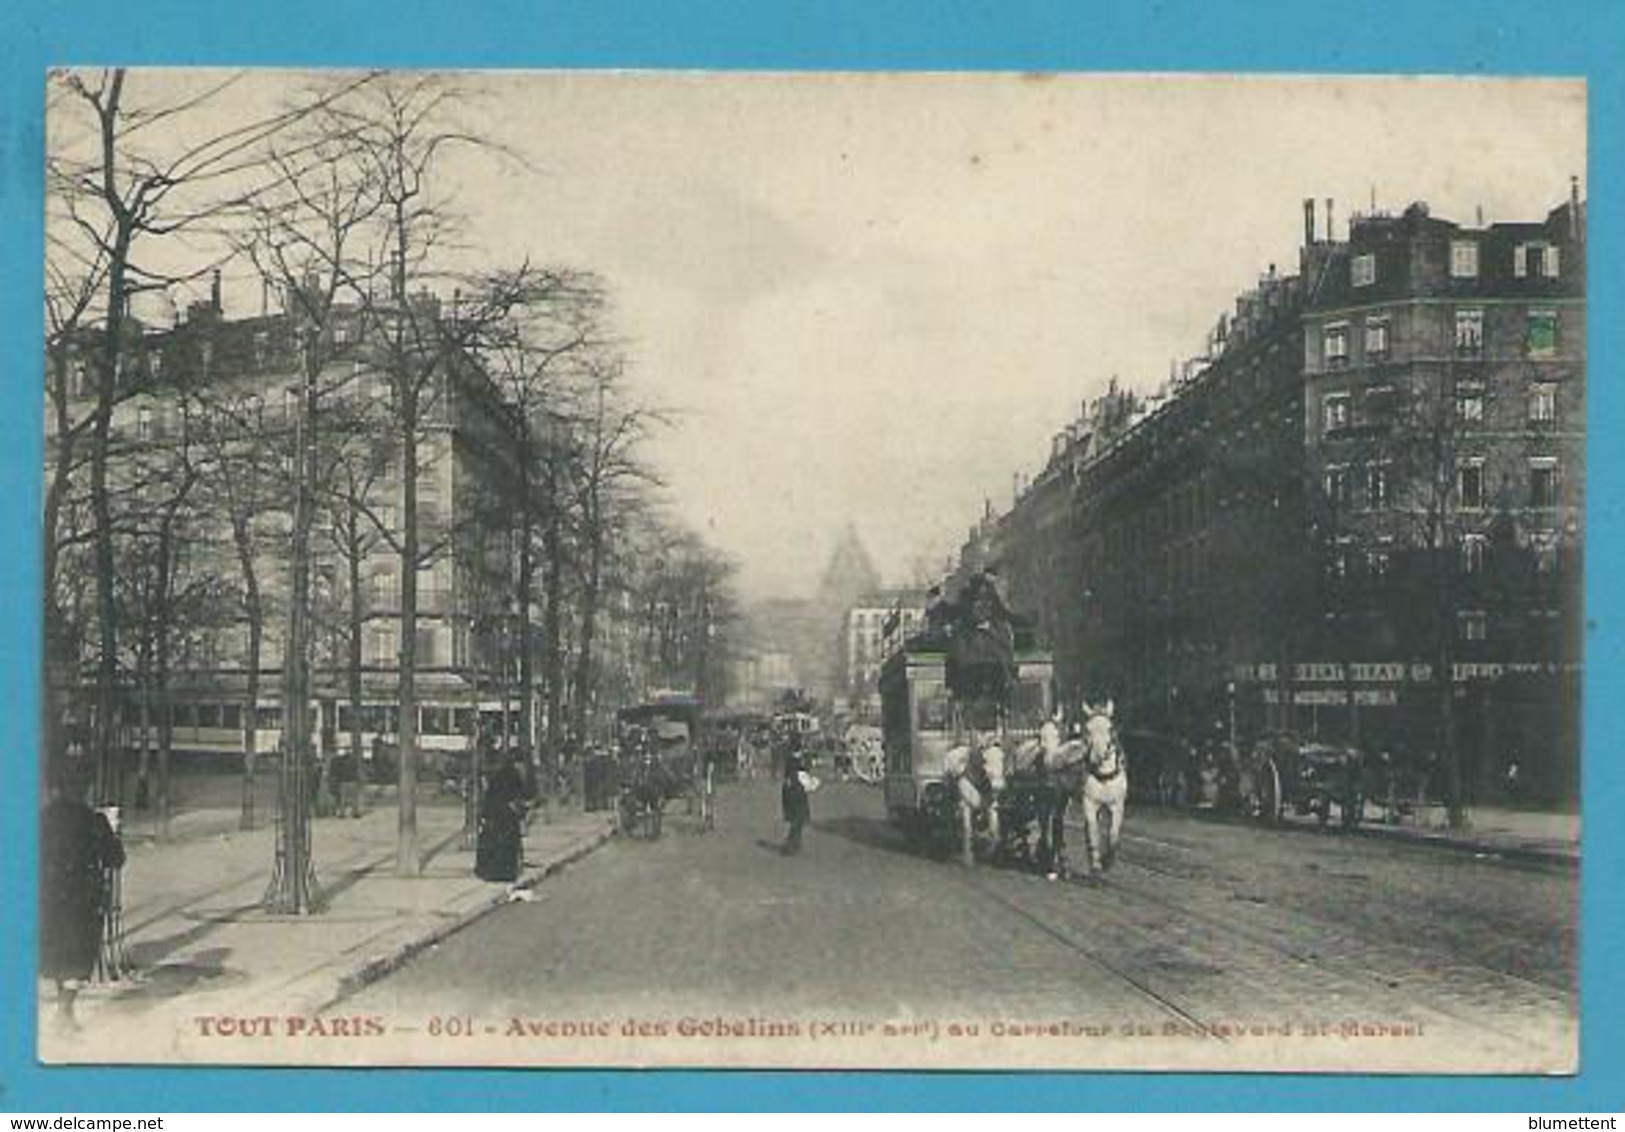 CPA TOUT PARIS 601 - Patache Attelage Avenue Des Gobelins Au Carrefour Du Bld St Marcel (XIIIème) - Distretto: 13